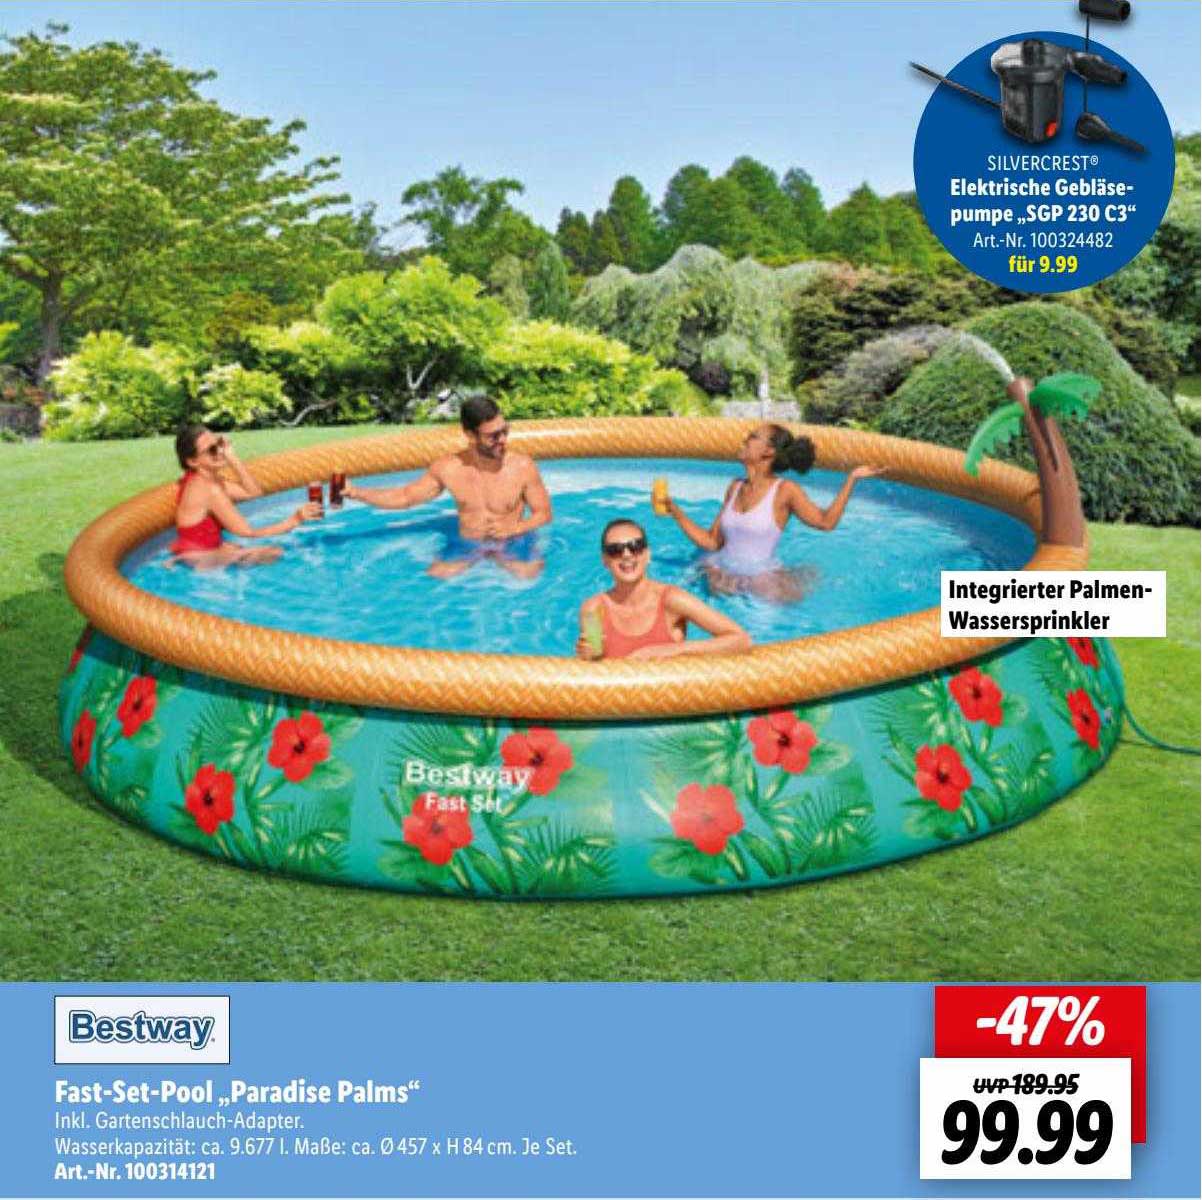 Bestway Fast-set-pool „paradise Palms” Angebot bei Lidl